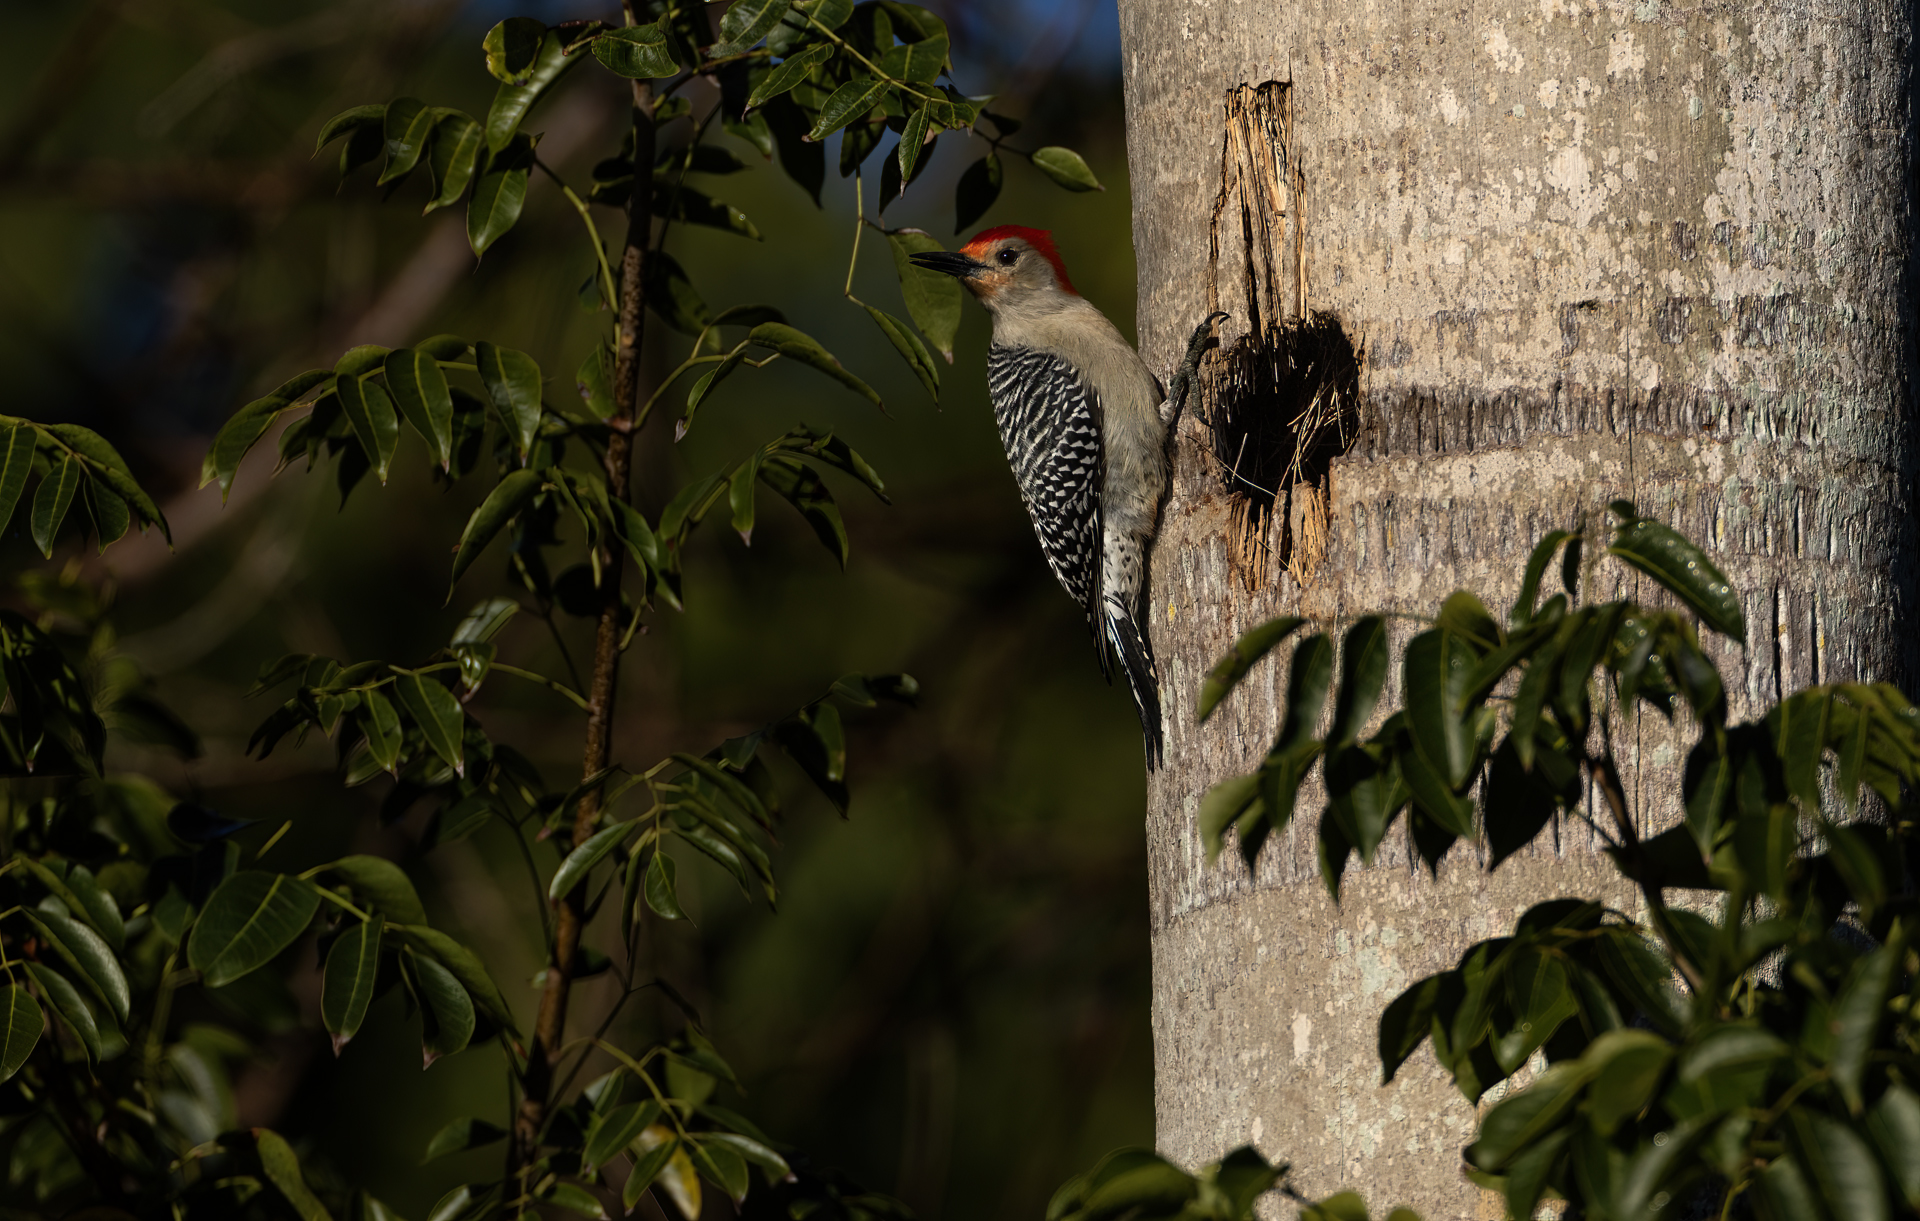 Karolinaspett, Red-bellied woodpecker, Florida